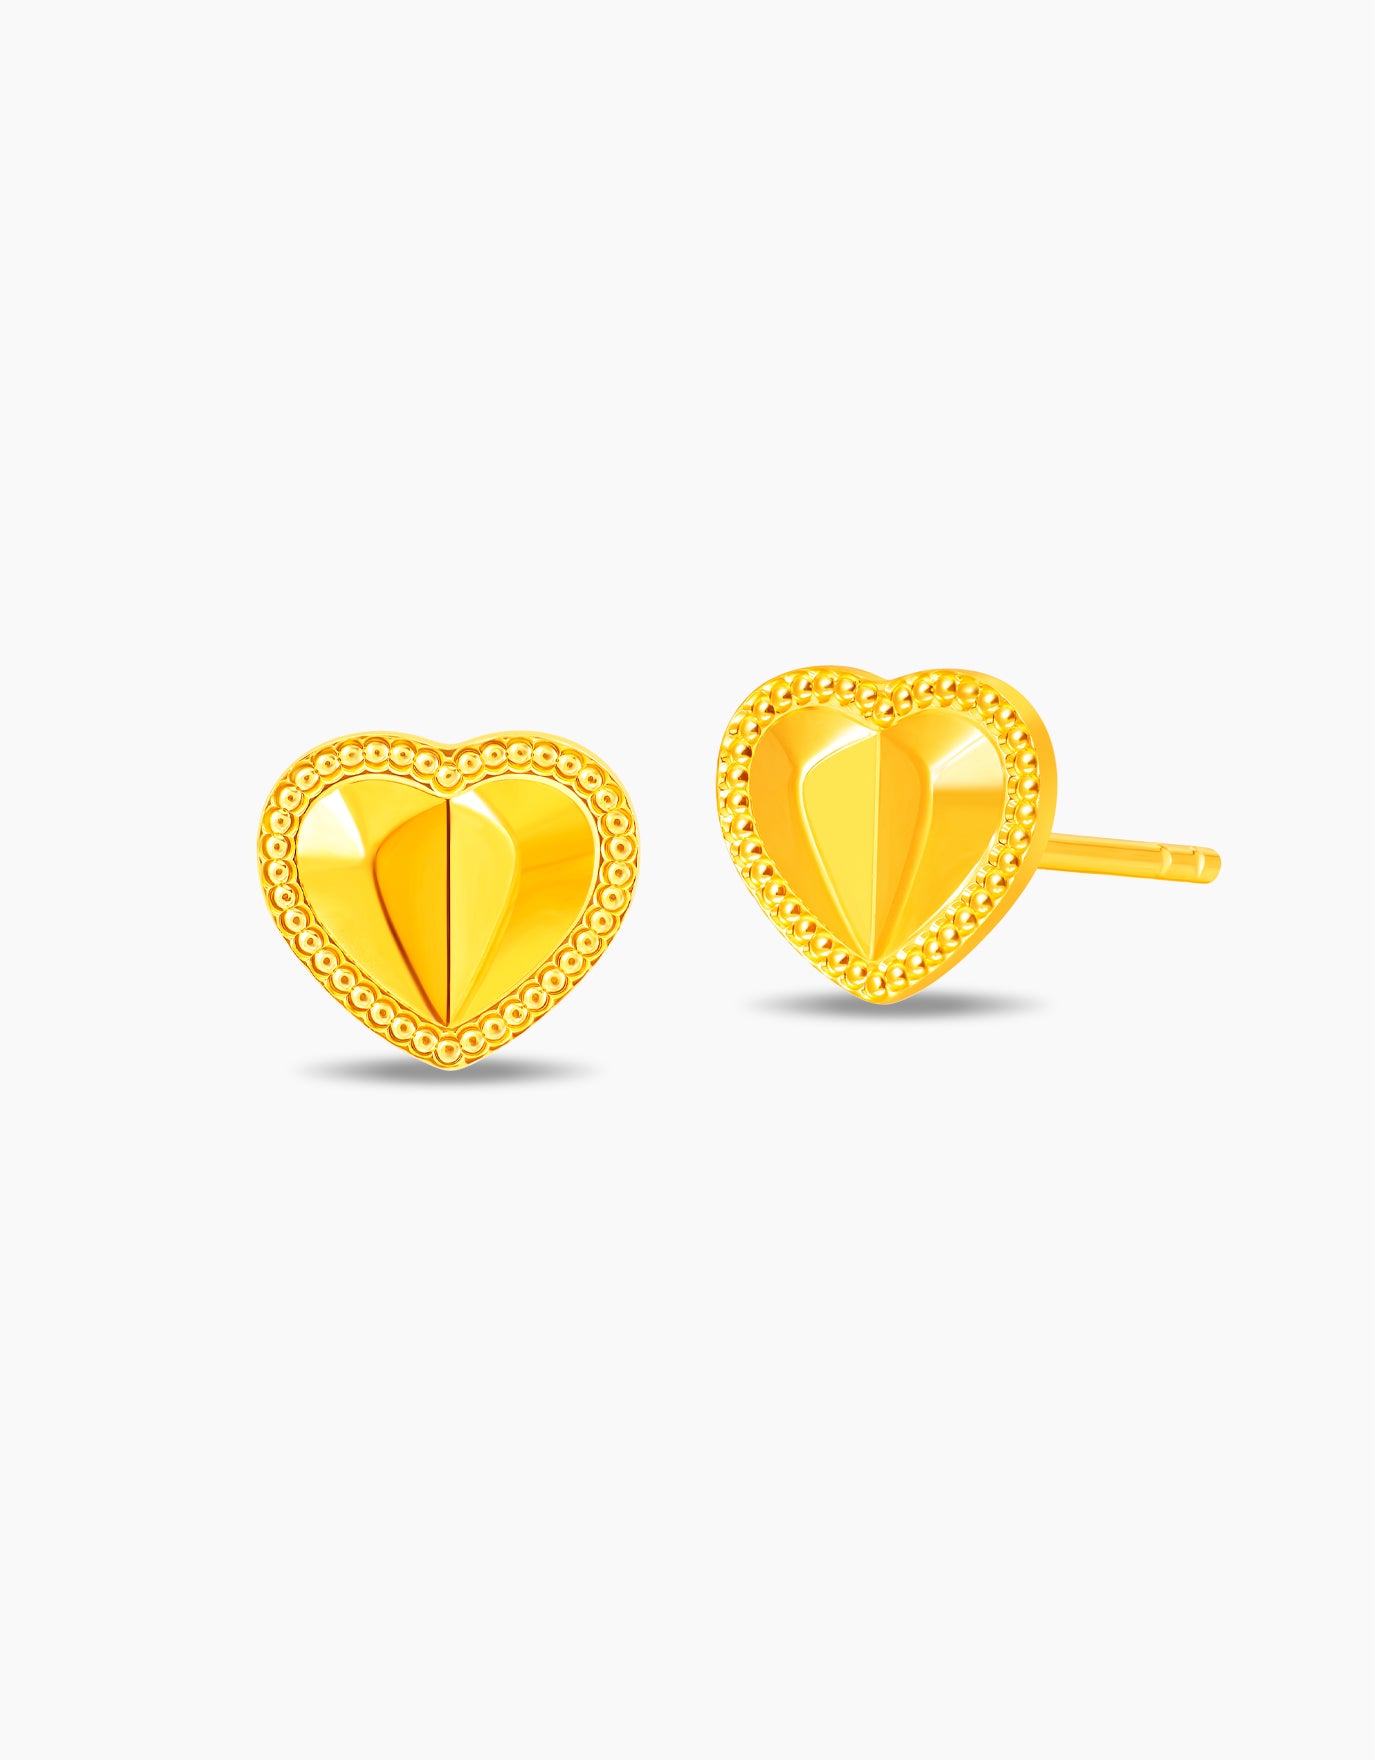 LVC 9IN Koharu Heart 999 Gold Earrings